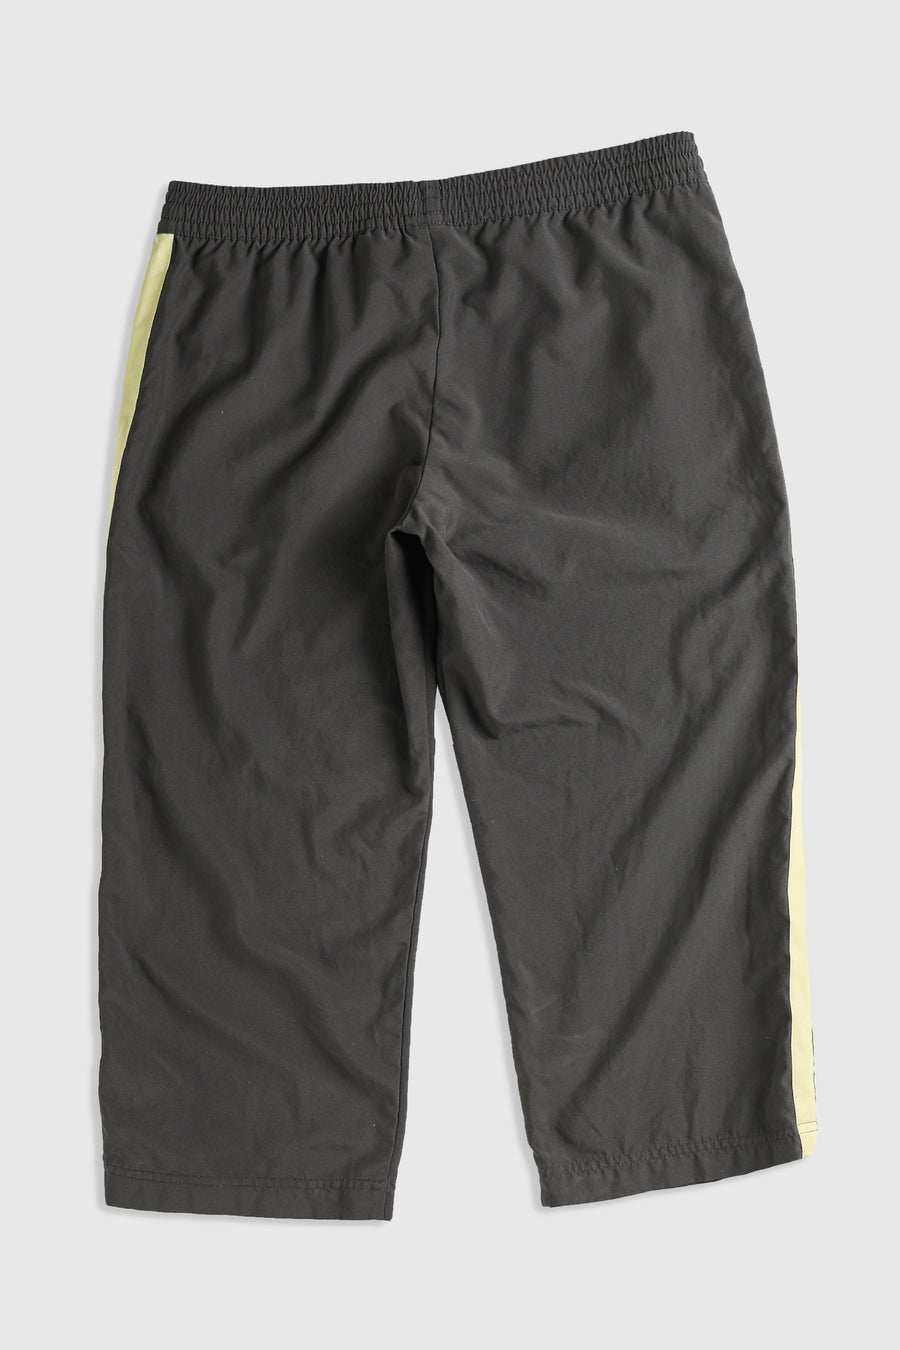 Vintage Nike Capri Pants - M